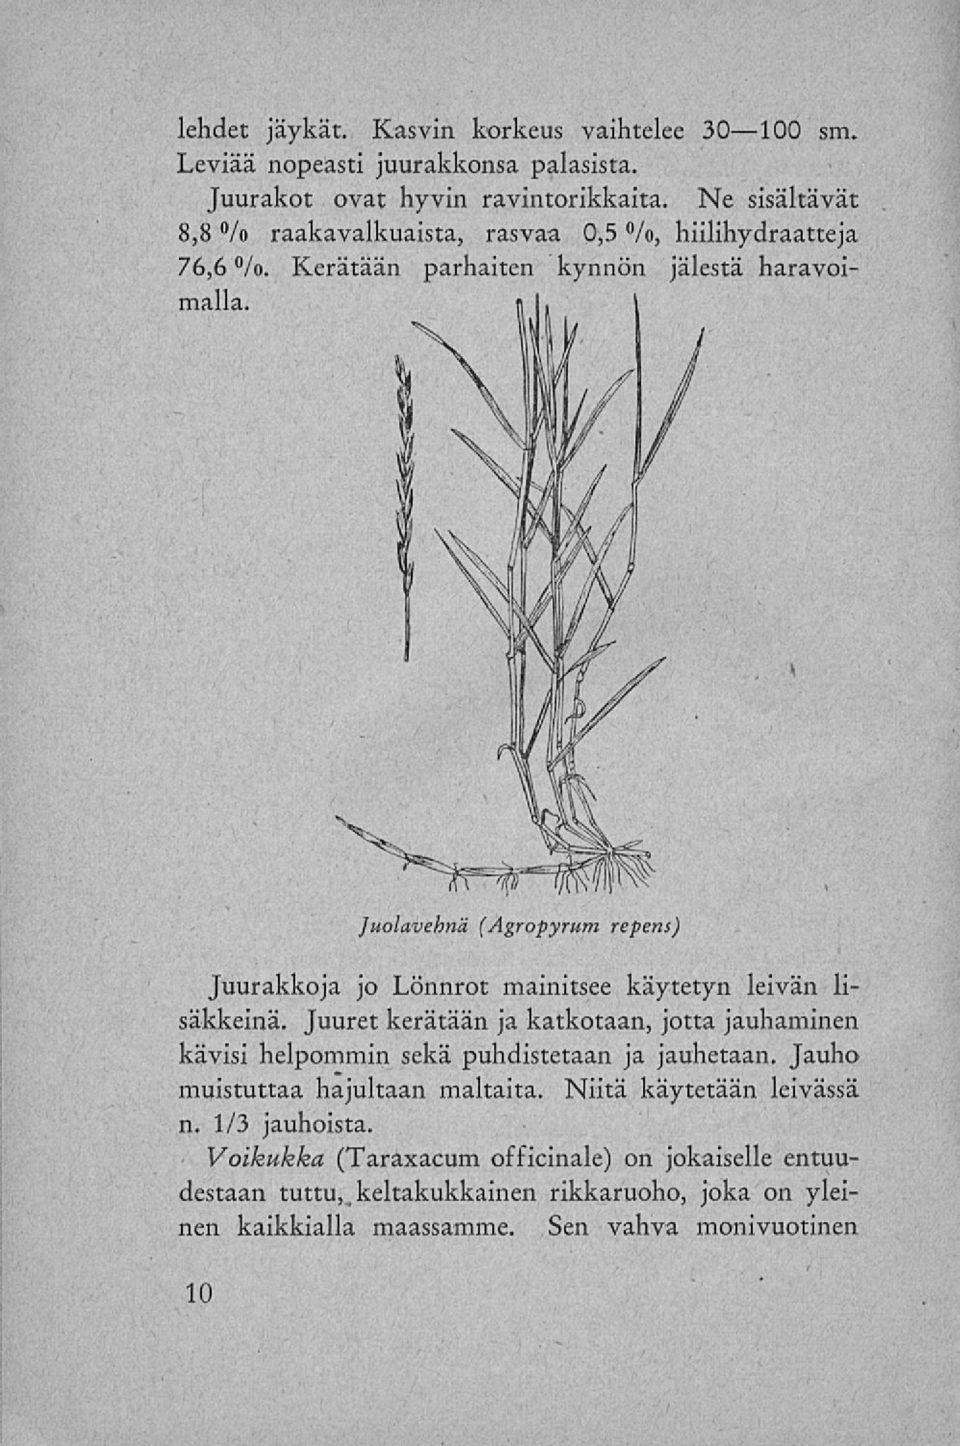 K Juolavehnä (Agropyrum repens) Juurakkoja jo Lönnrot mainitsee käytetyn leivän lisäkkeinä.